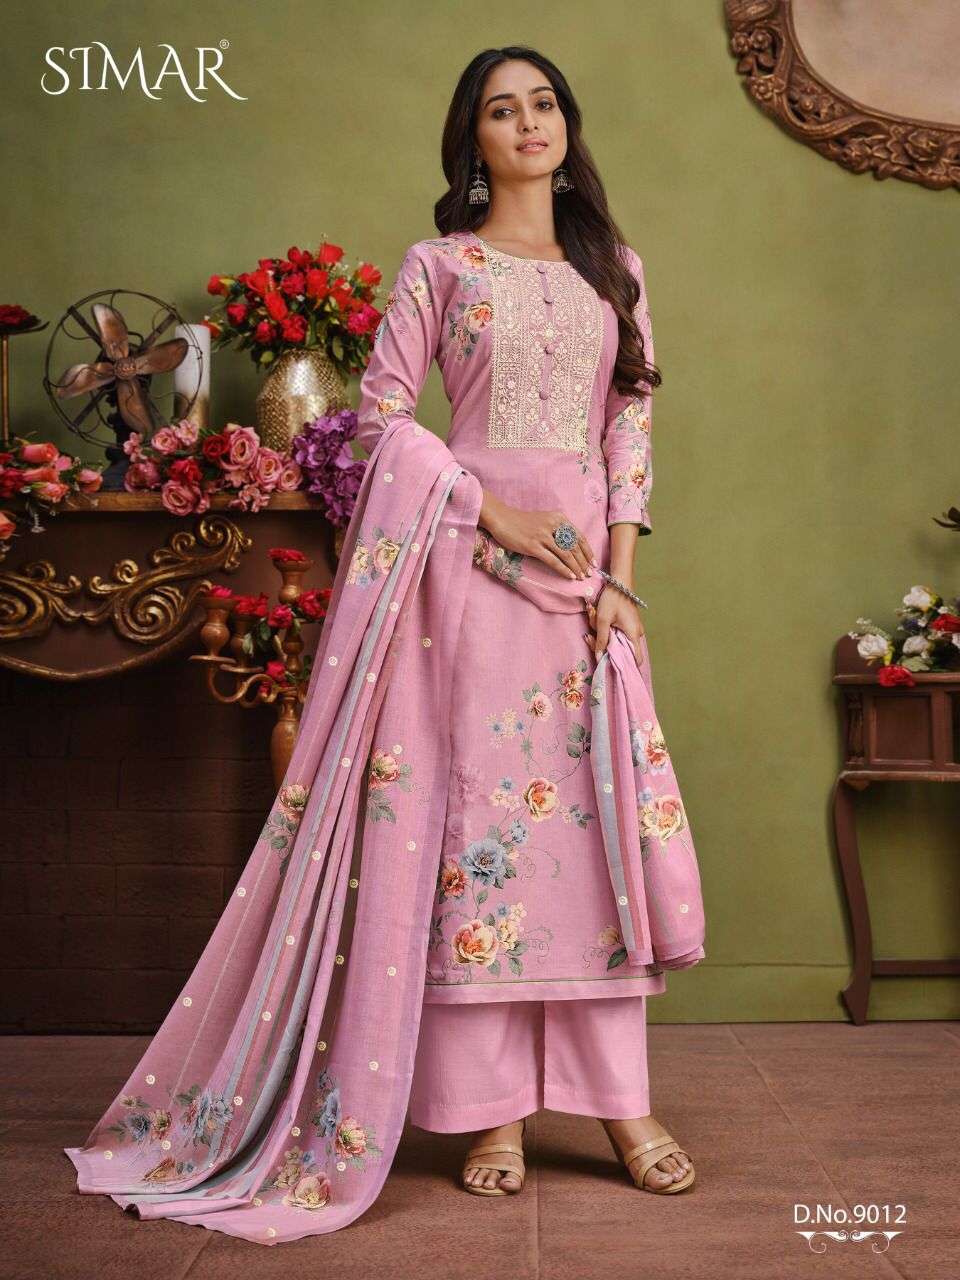  simar shiran stylish designer salwar suits online supplier surat